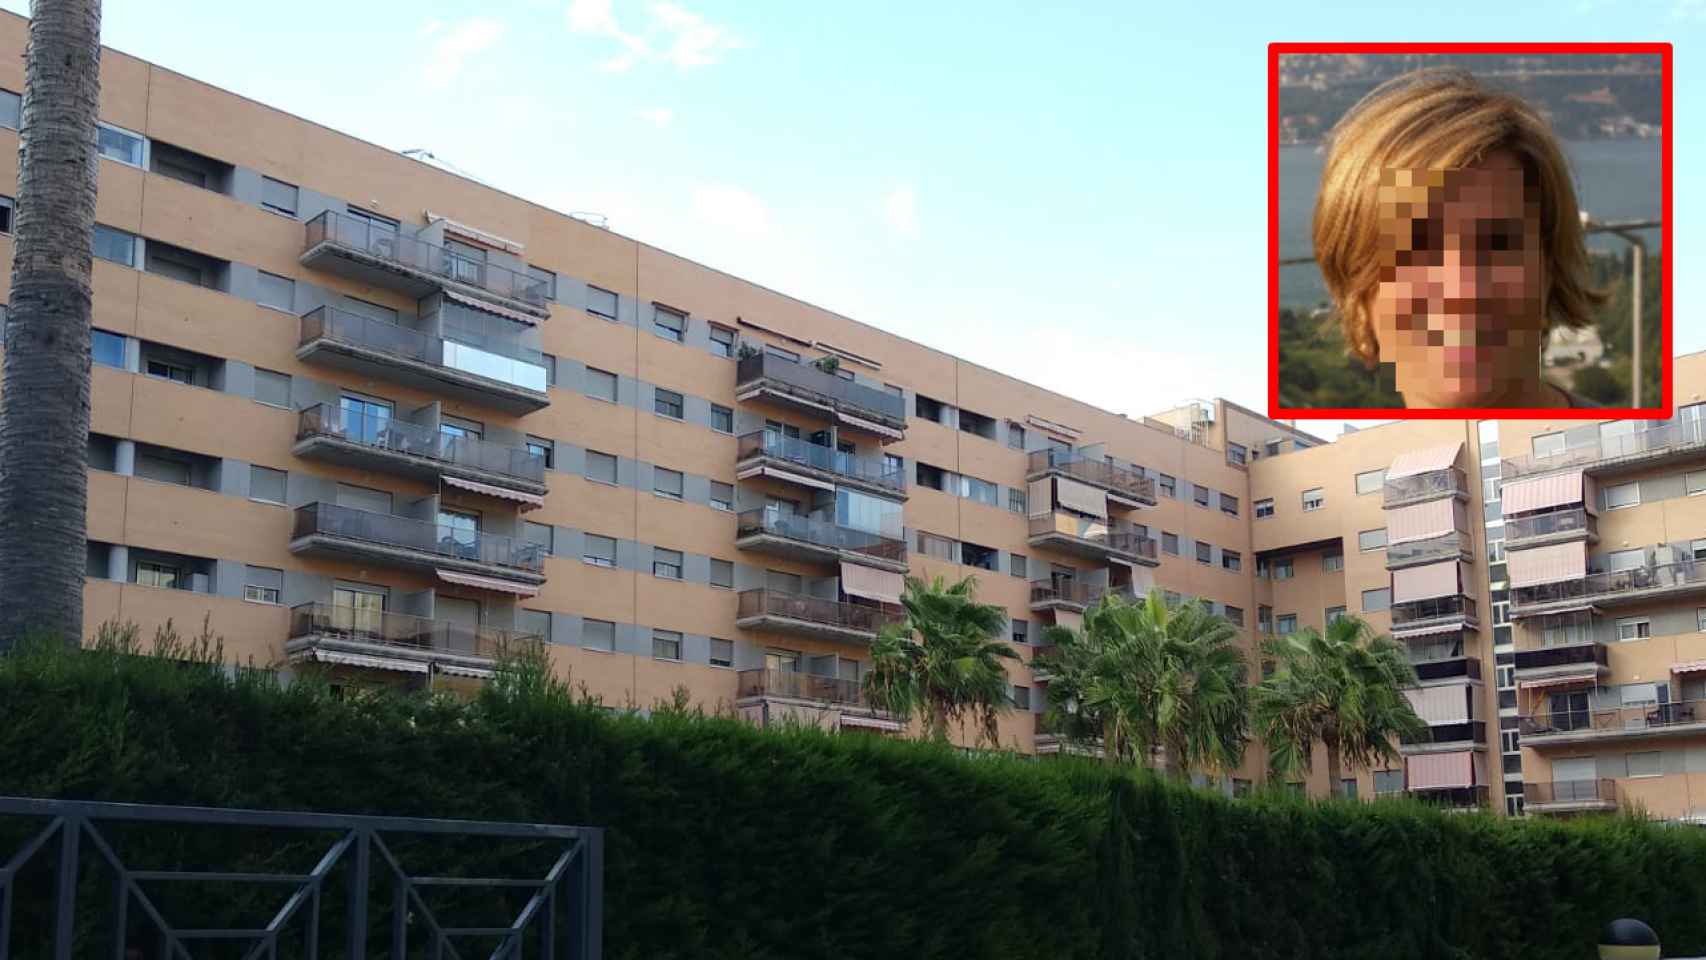 La familia, formada por Emelina (en la imagen) y su marido Fernando, vivían en un sexto piso.